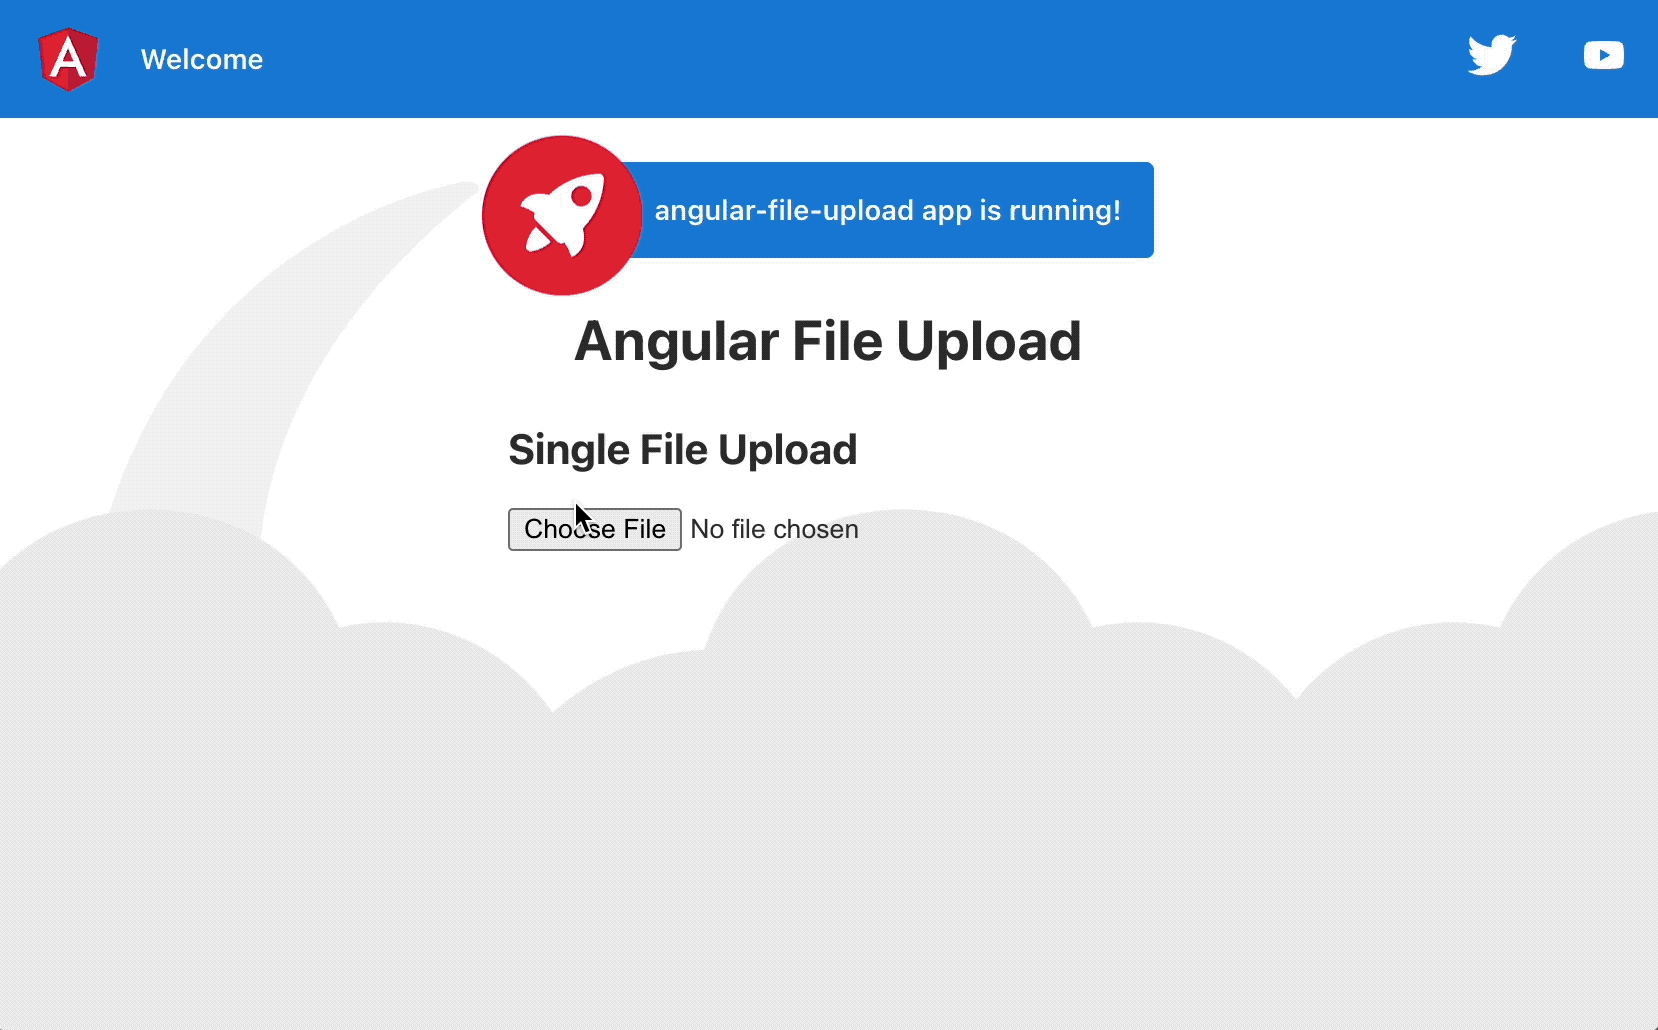 Single file upload flow